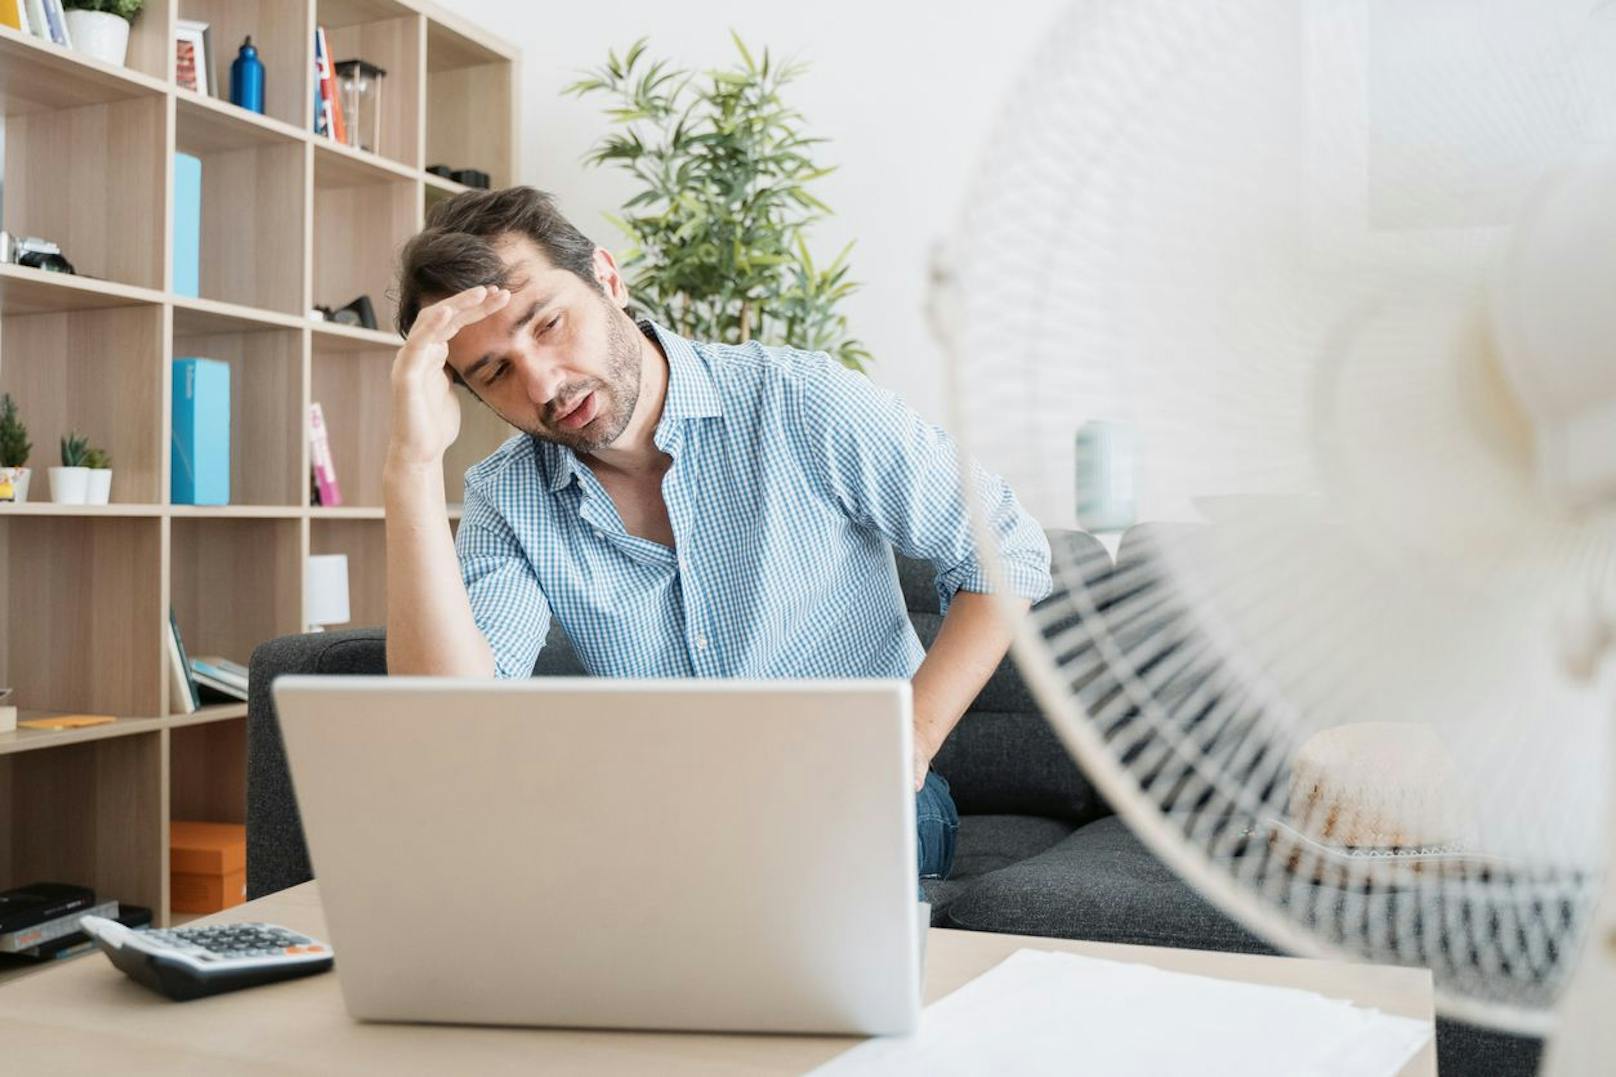 Wie du zu Hause arbeitest und wie heiß es in deiner Wohnung ist, kann dein Arbeitgeber nicht beeinflussen. Hier musst du Maßnahmen setzen, um das Arbeiten möglich zu machen.